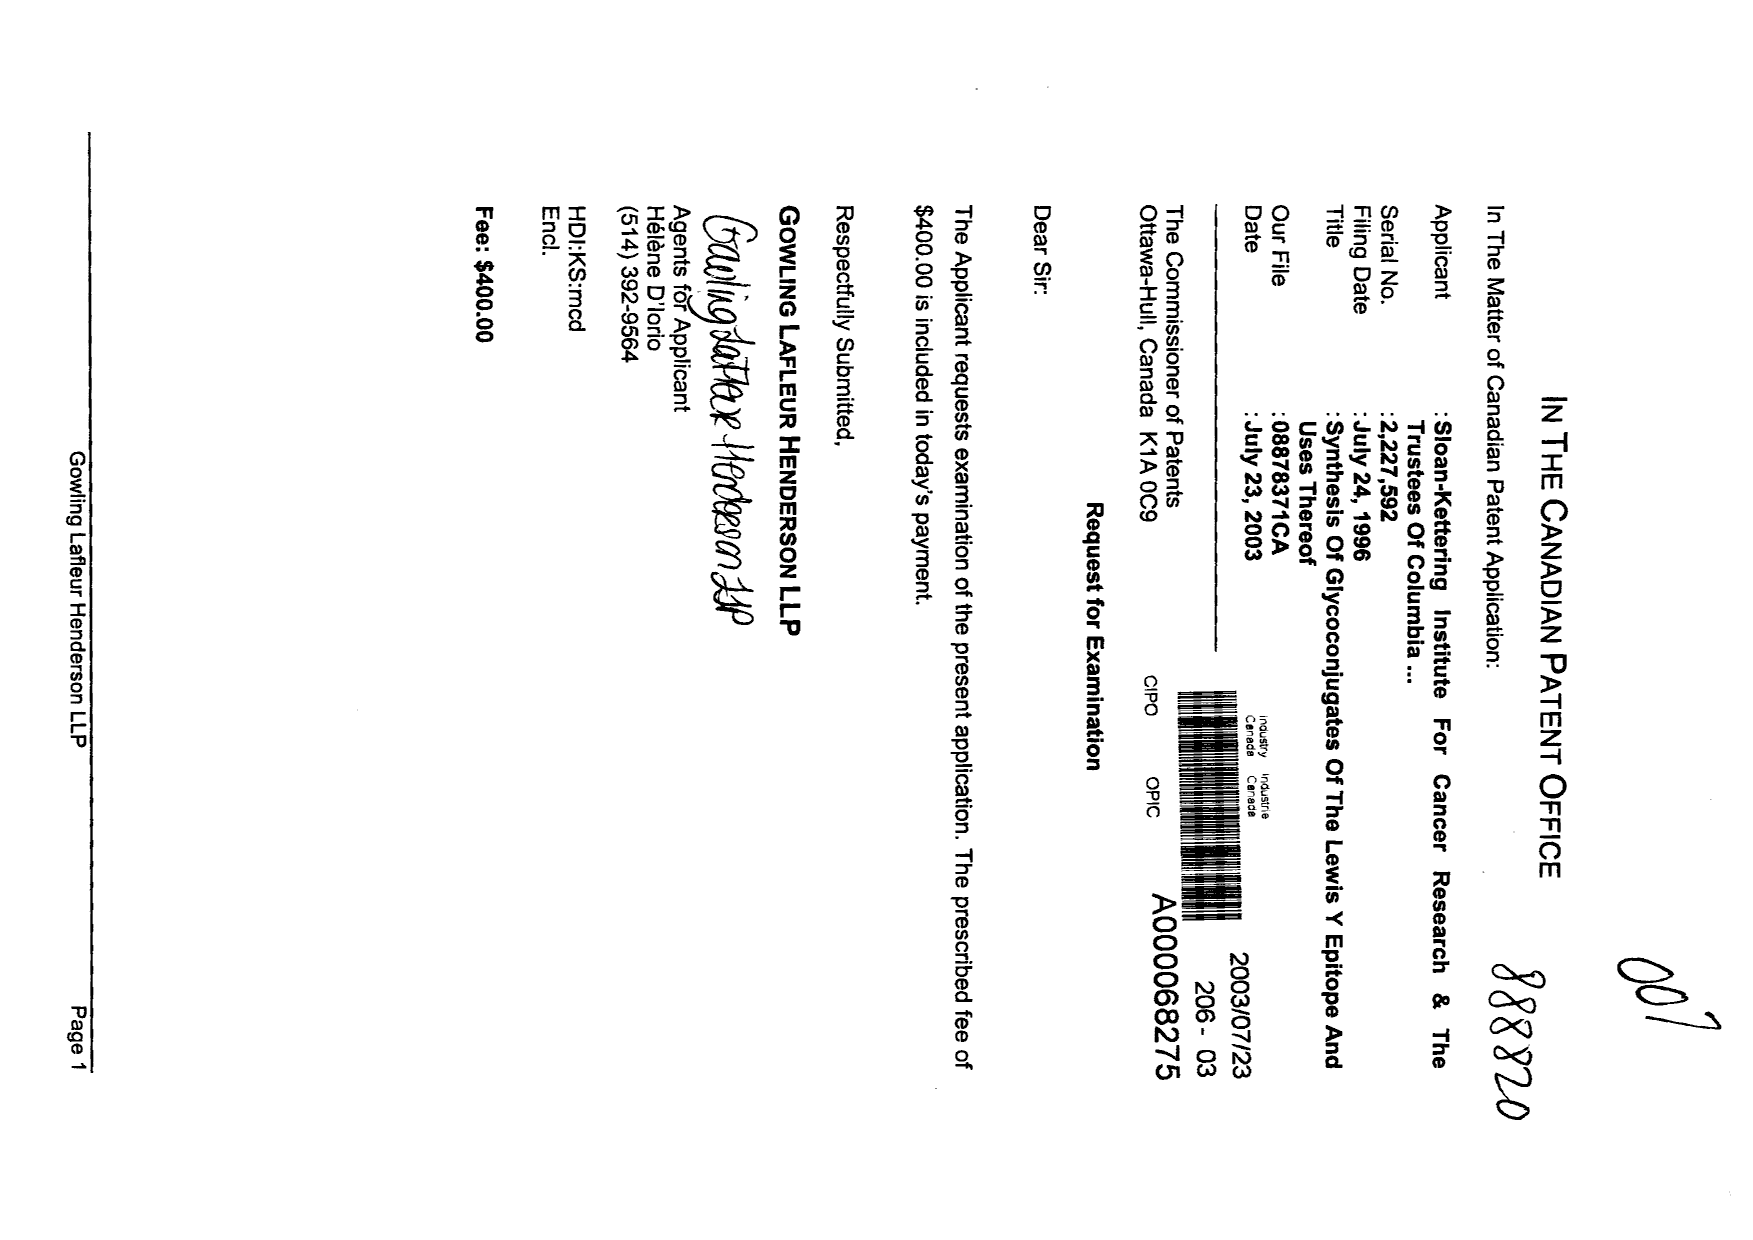 Document de brevet canadien 2227592. Poursuite-Amendment 20030723. Image 1 de 1